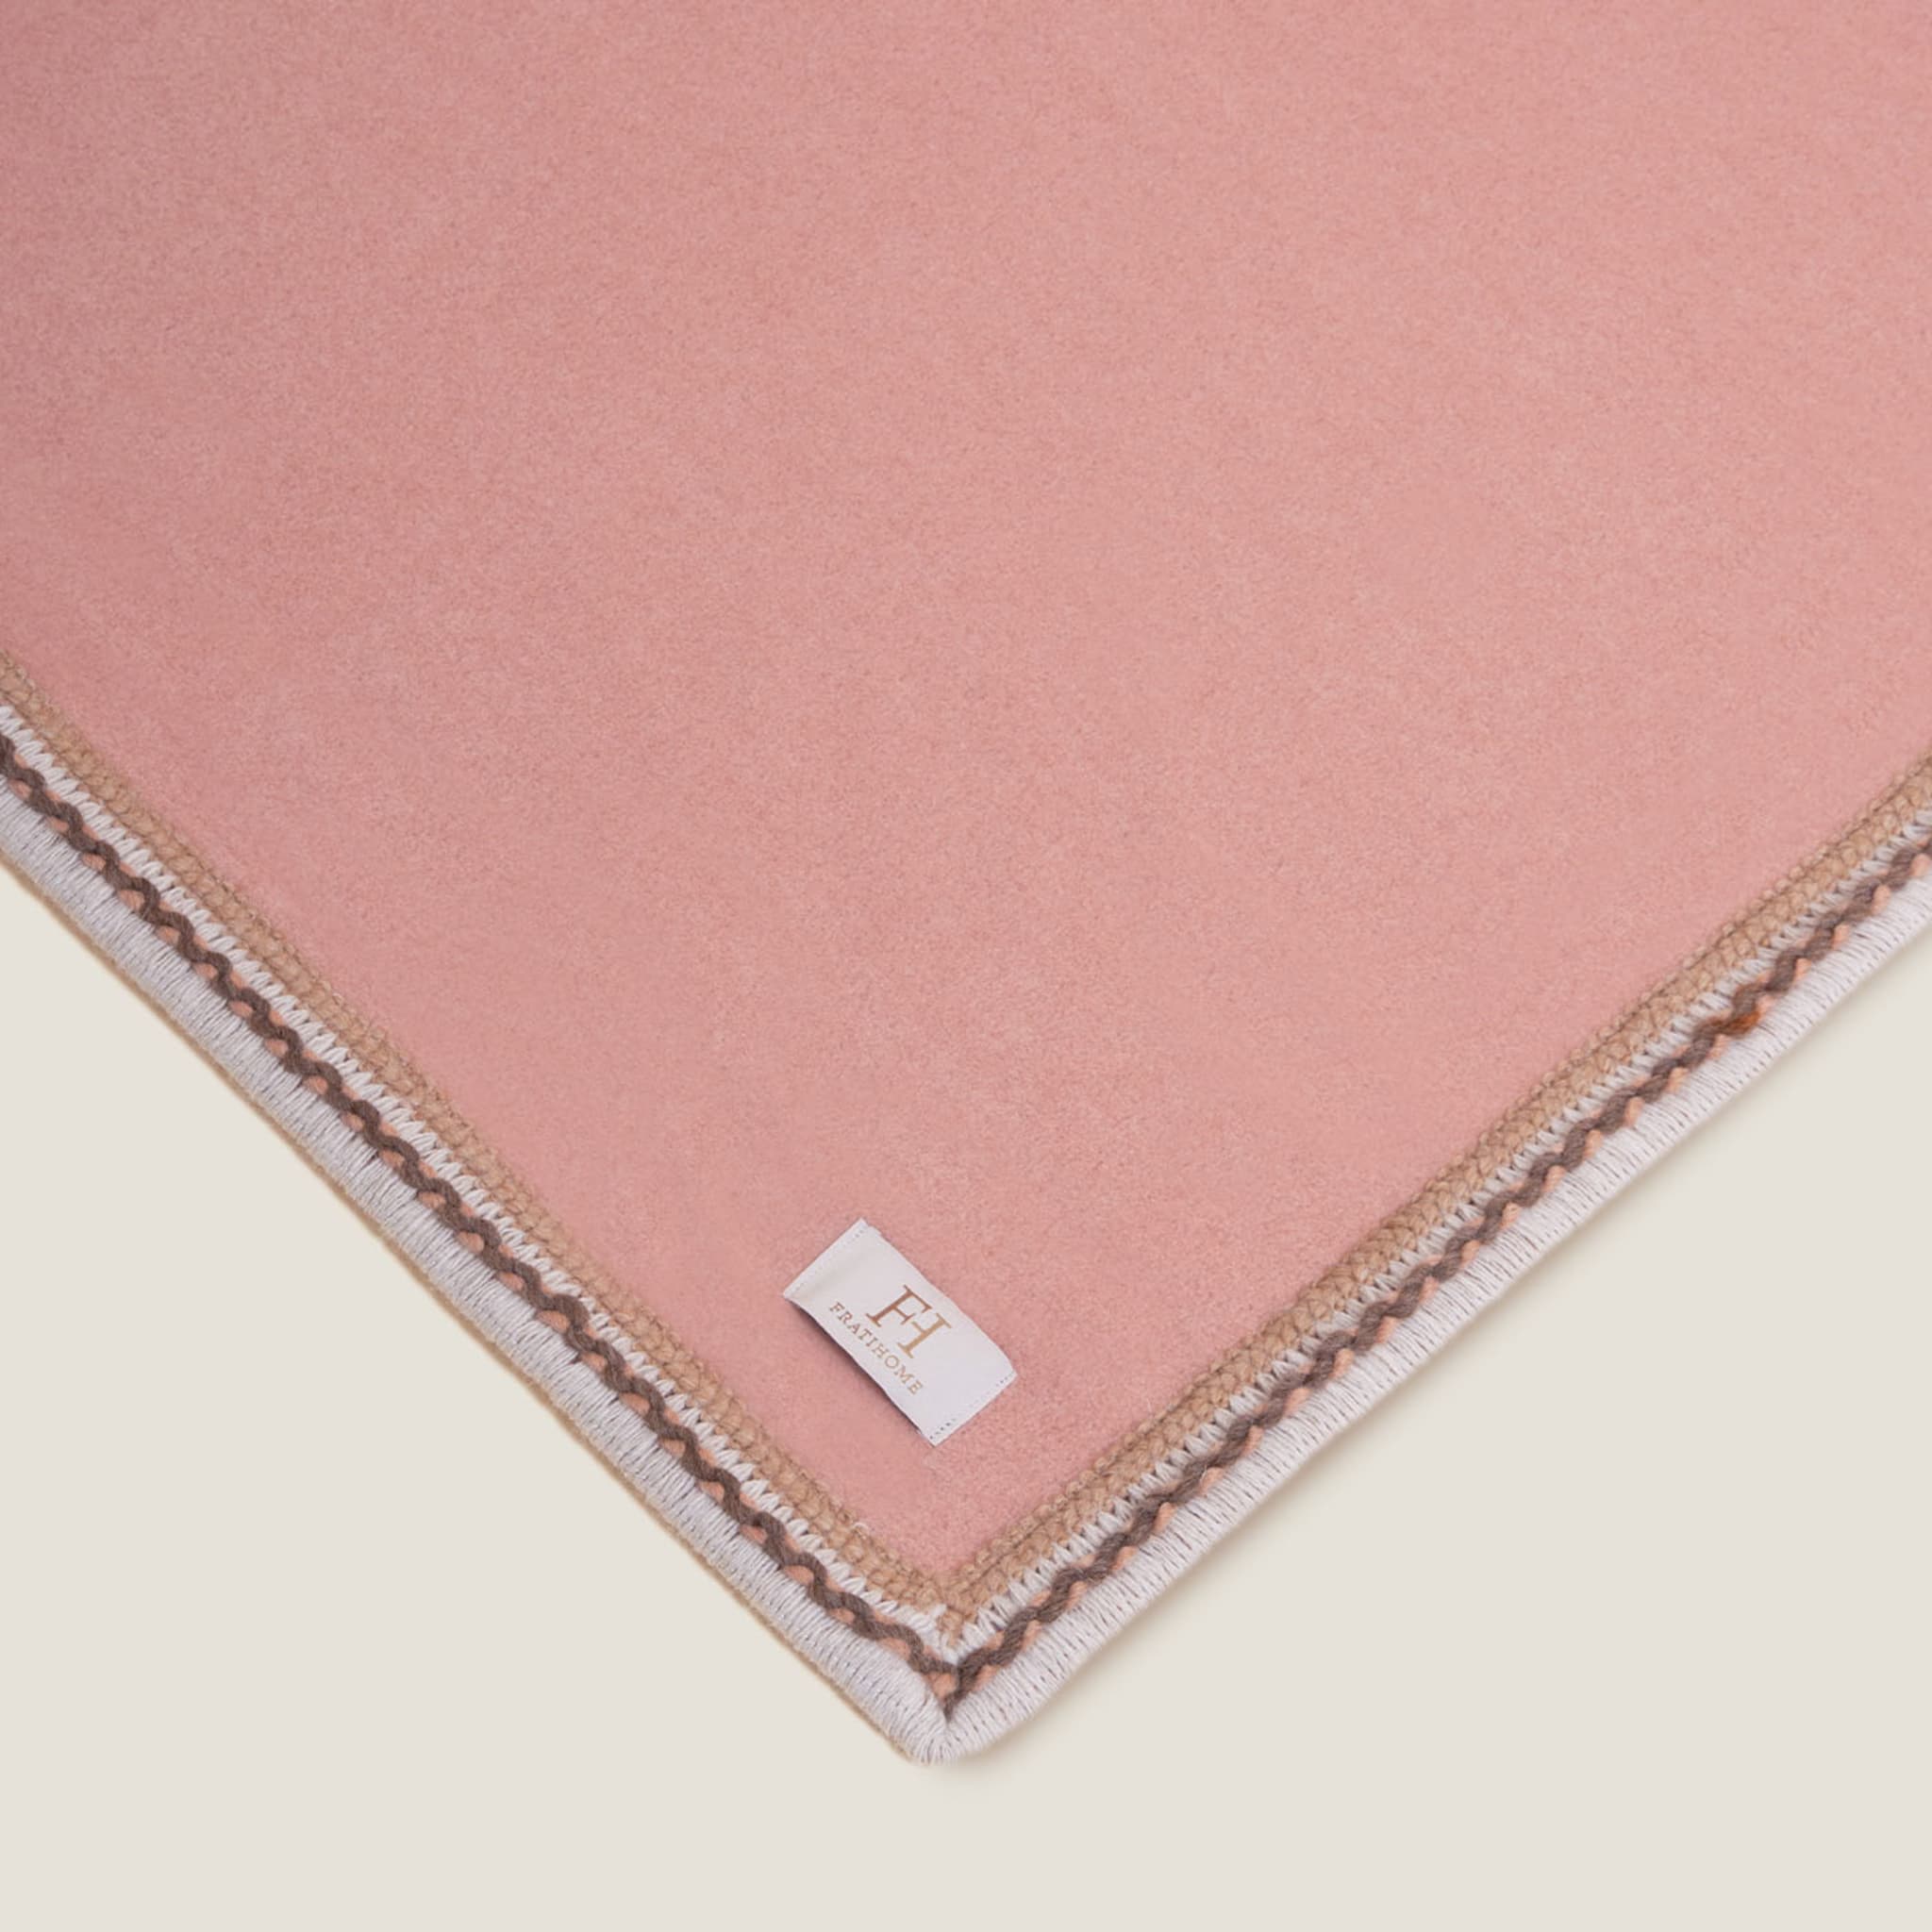 Soft Cotton Pink Blanket - Alternative view 1